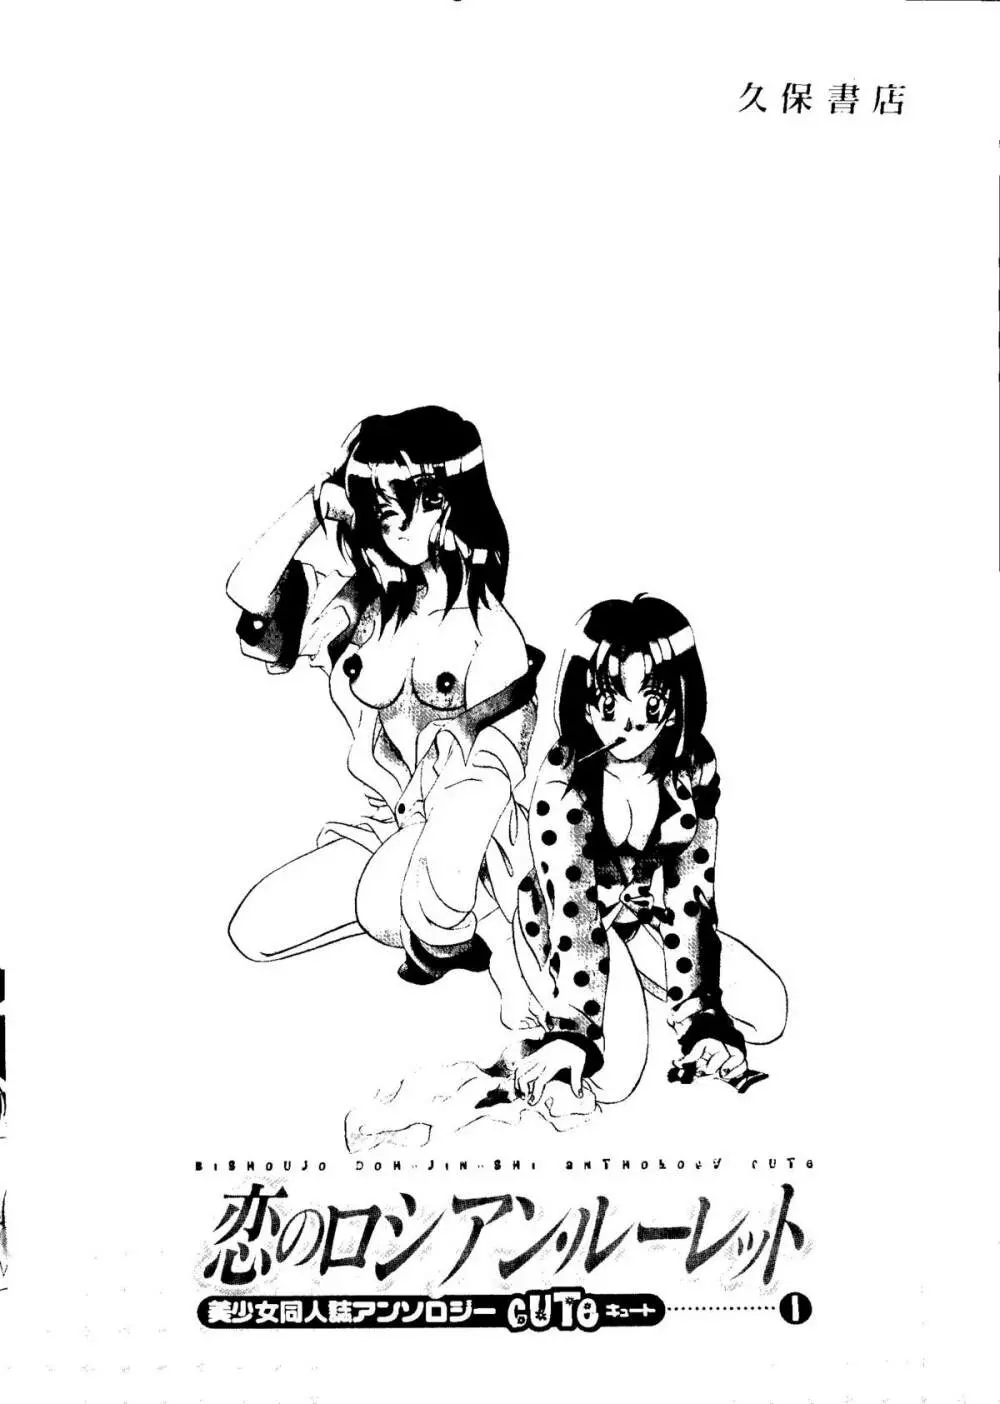 Bishoujo Doujinshi Anthology Cute 1 147ページ